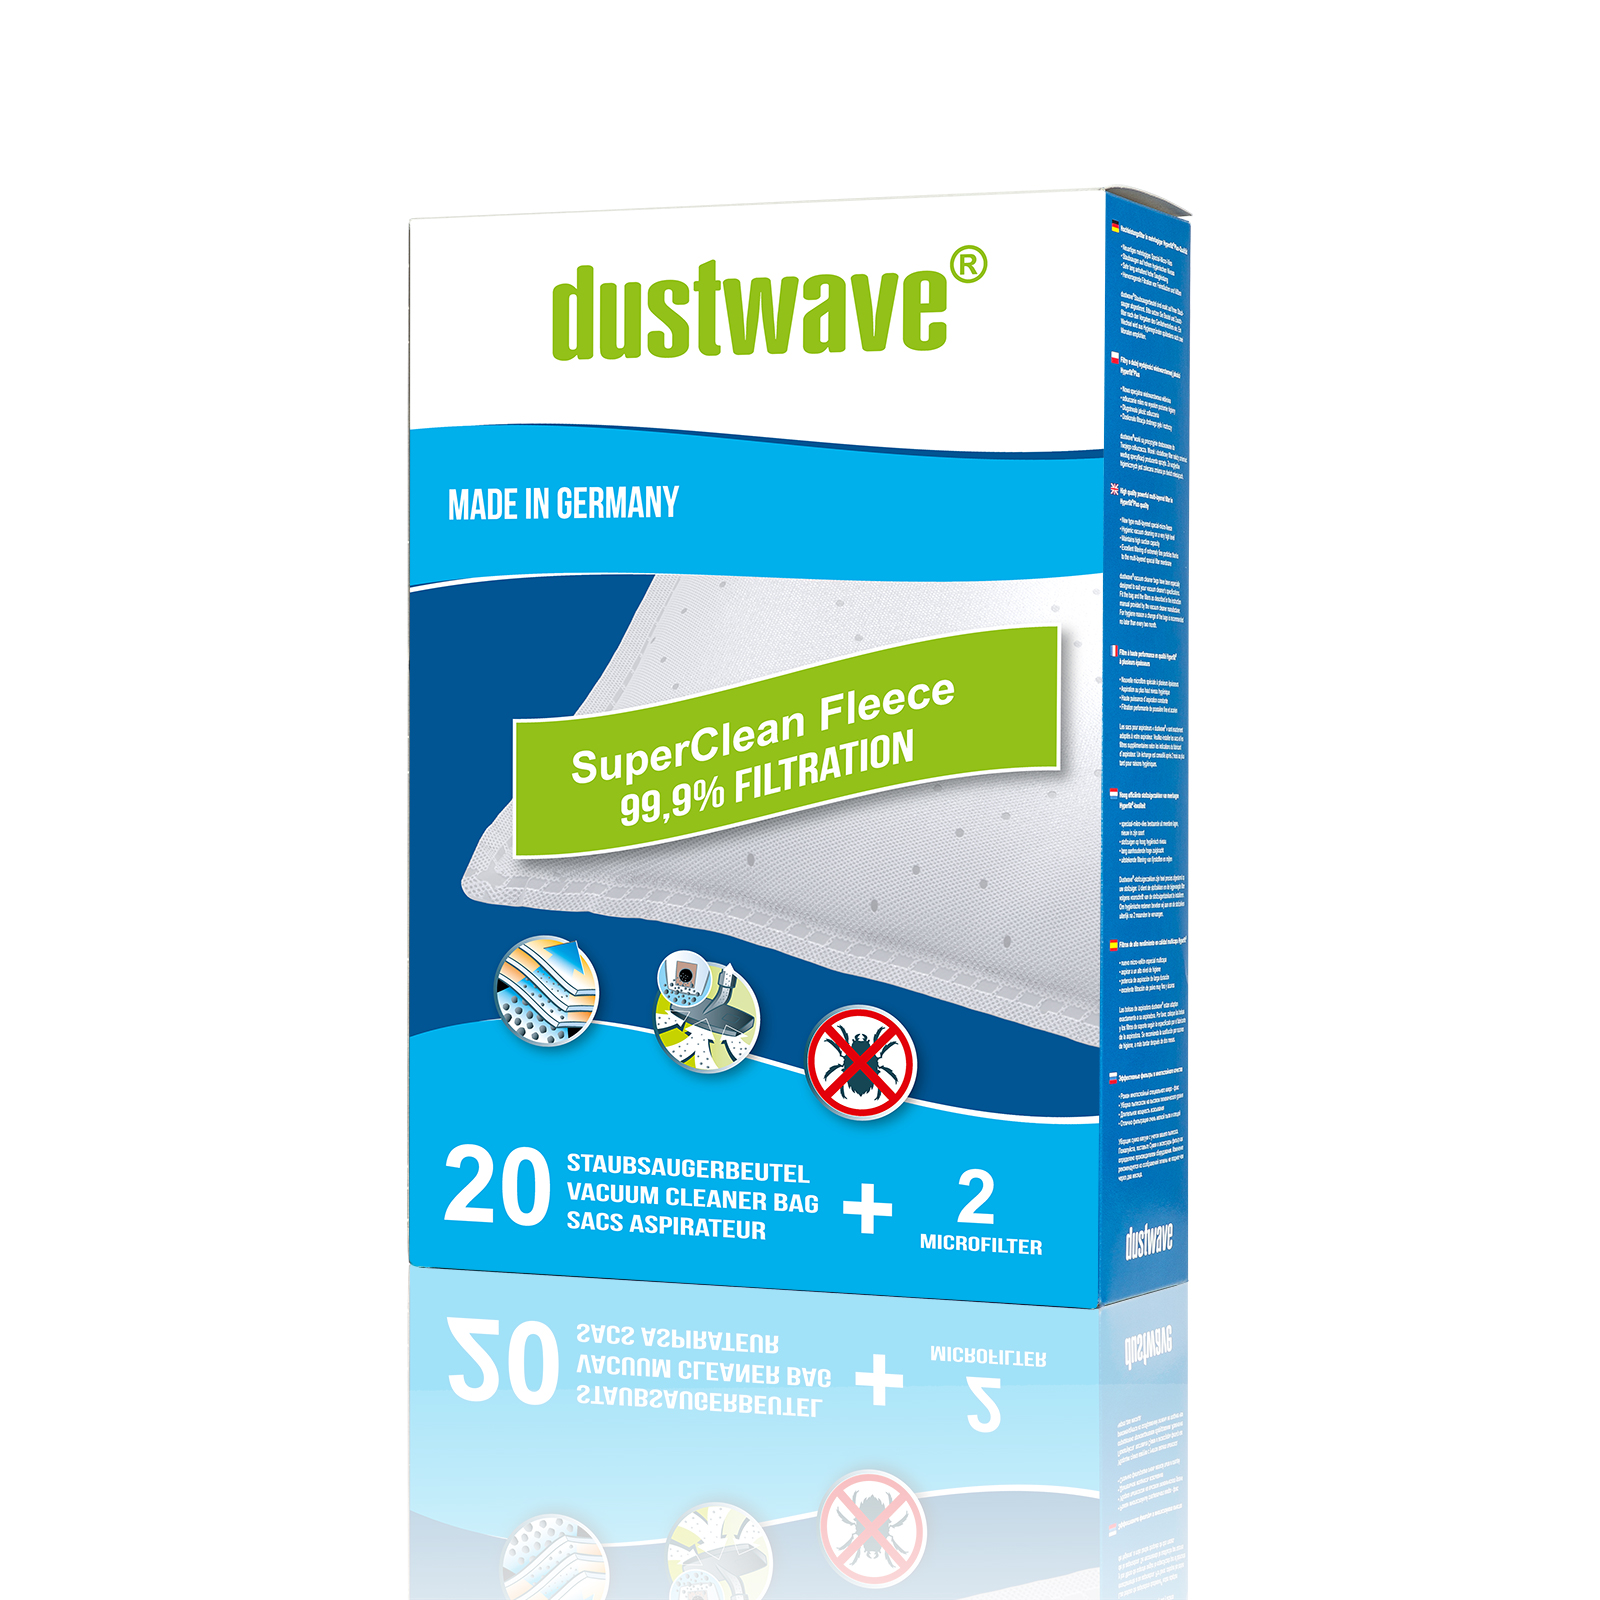 Dustwave® 40 Staubsaugerbeutel für Luxor LVC 3100 R / LVC3100R - hocheffizient, mehrlagiges Mikrovlies mit Hygieneverschluss - Made in Germany